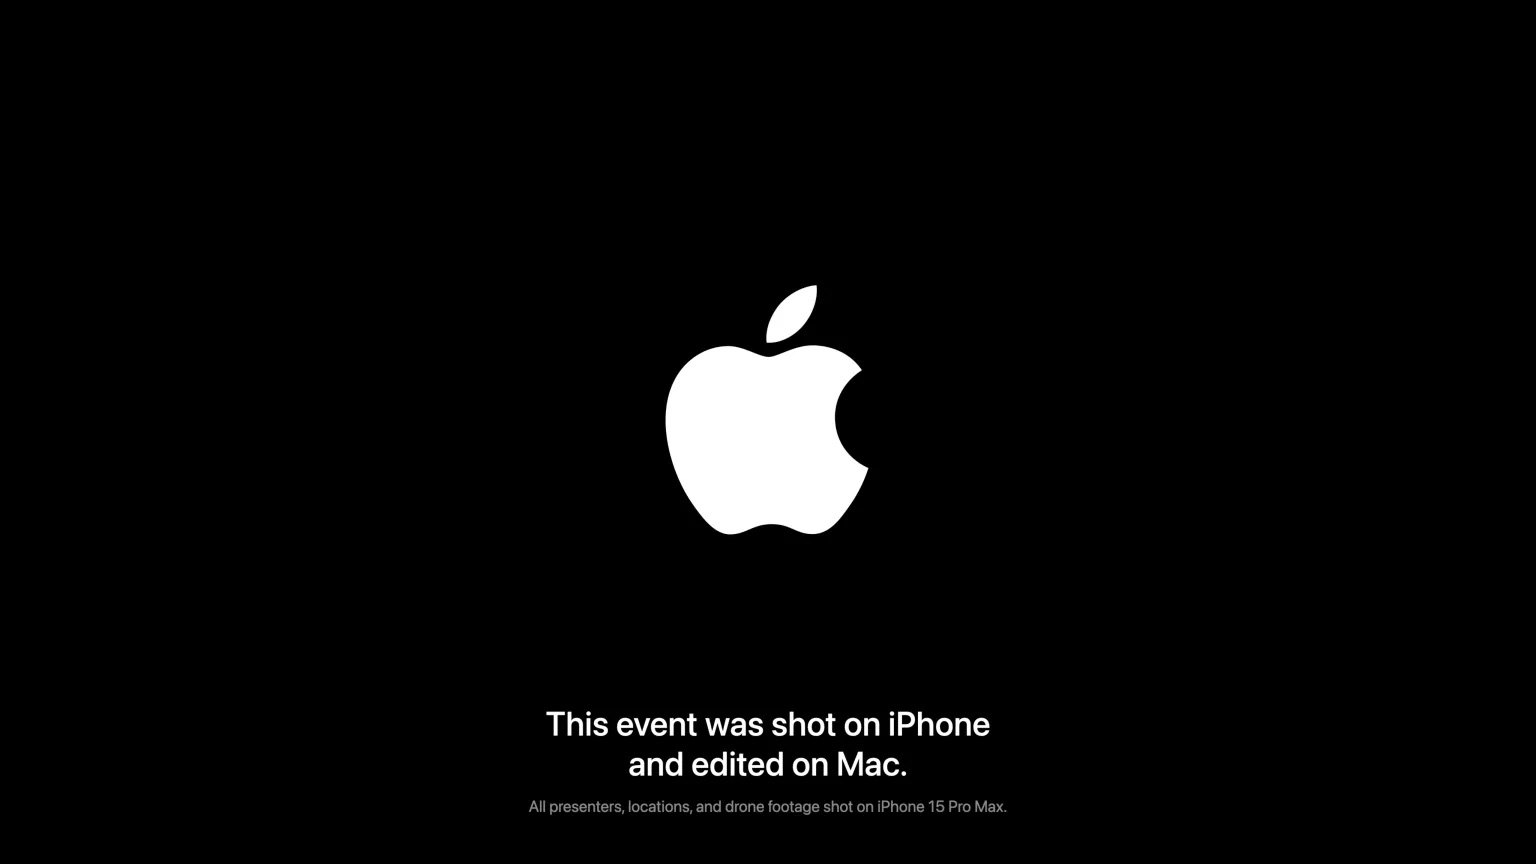 Prezentacja Apple „Scary Fast” została nagrana za pomocą iPhone 15 Pro Max ciekawostki zoom optyczny, USB-C 3.0, technologia, standardy kolorów, smartfony, ProRes Log, prezentacja, potencjał smartfonów, MacBook Pro, korekta kolorów, iphone 15 pro max, innowacje, iMac, Filmowanie, Apple, ACES  Najnowsza prezentacja firmy Apple "Scary Fast", która wyemitowana została na YouTube dziś w nocy została nagrana za pomocą najnowszego iPhone 15 Pro Max. scary 1 1